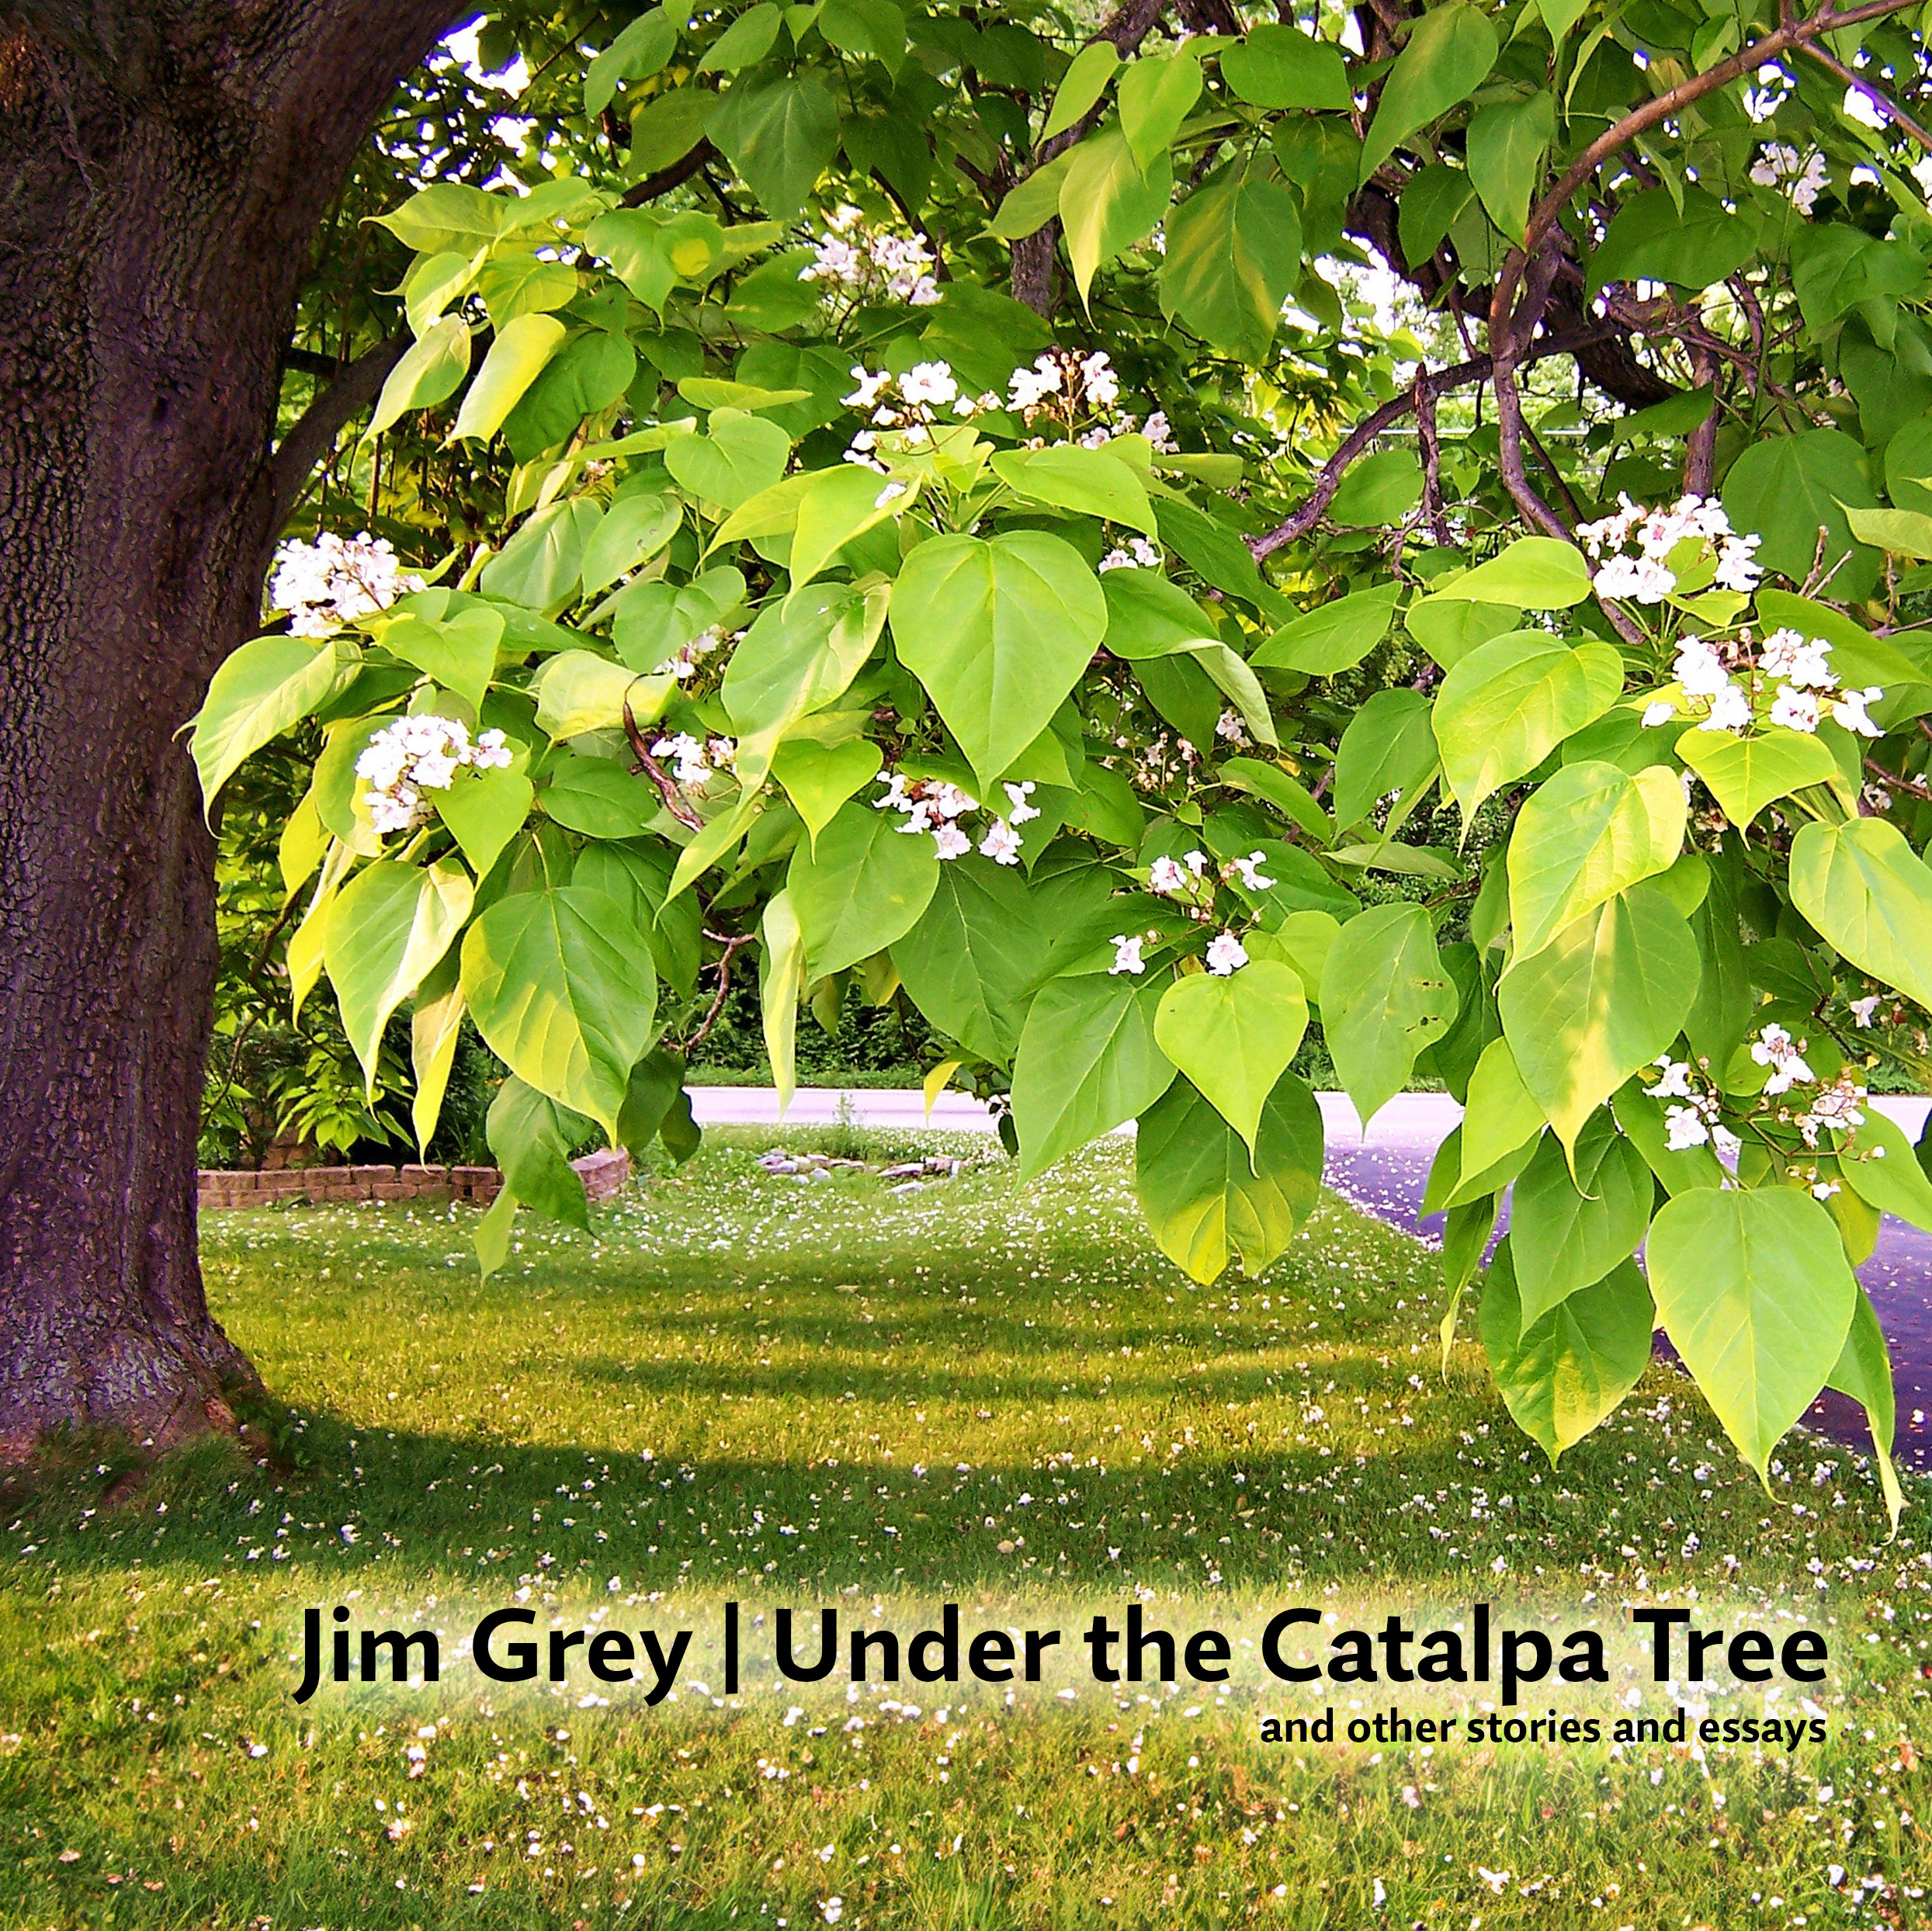 Under the Catalpa Tree